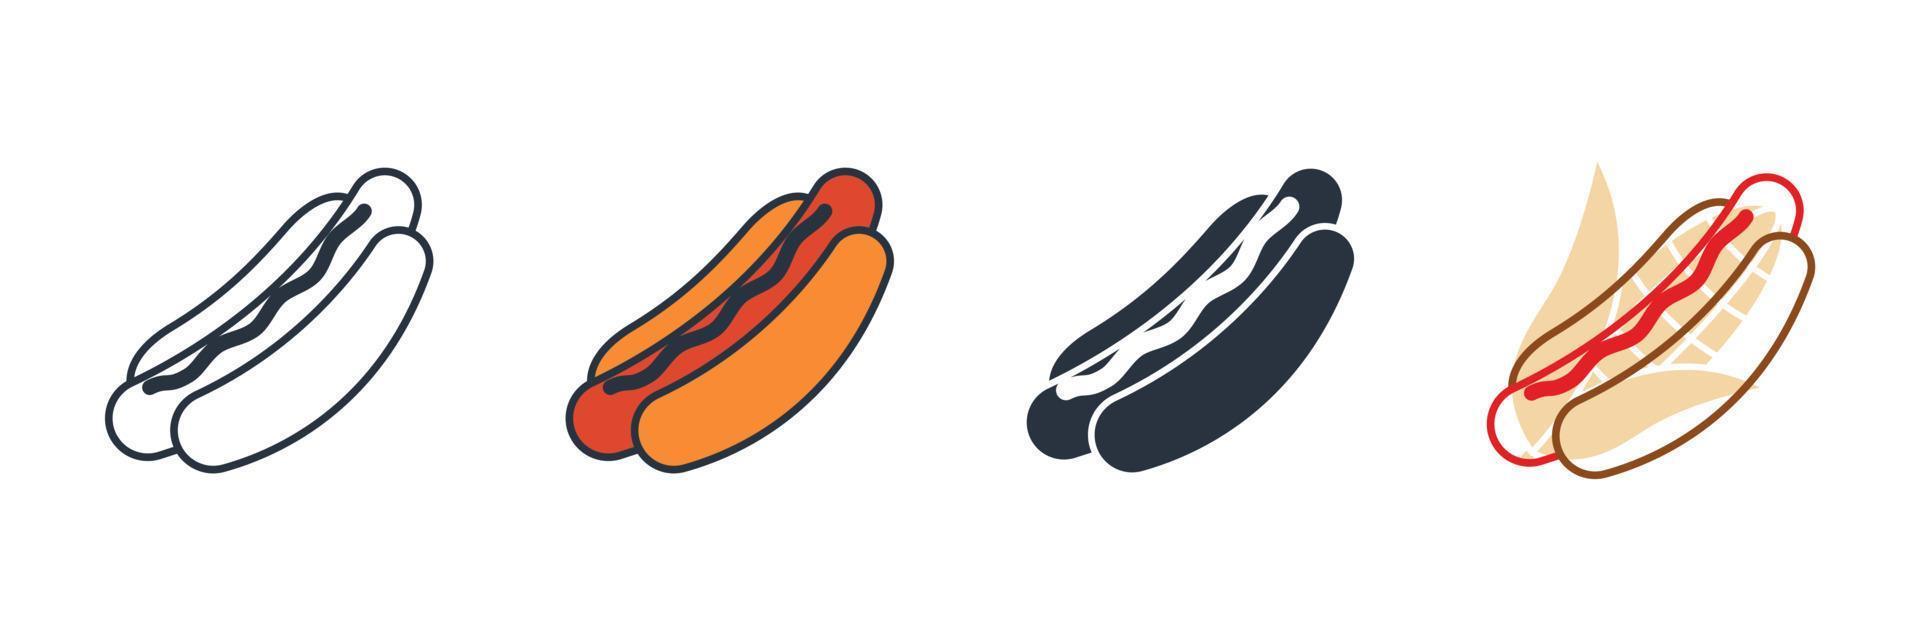 Hot-Dog-Symbol-Logo-Vektor-Illustration. Amerikanische köstliche Hotdog-Symbolvorlage für Grafik- und Webdesign-Sammlung vektor